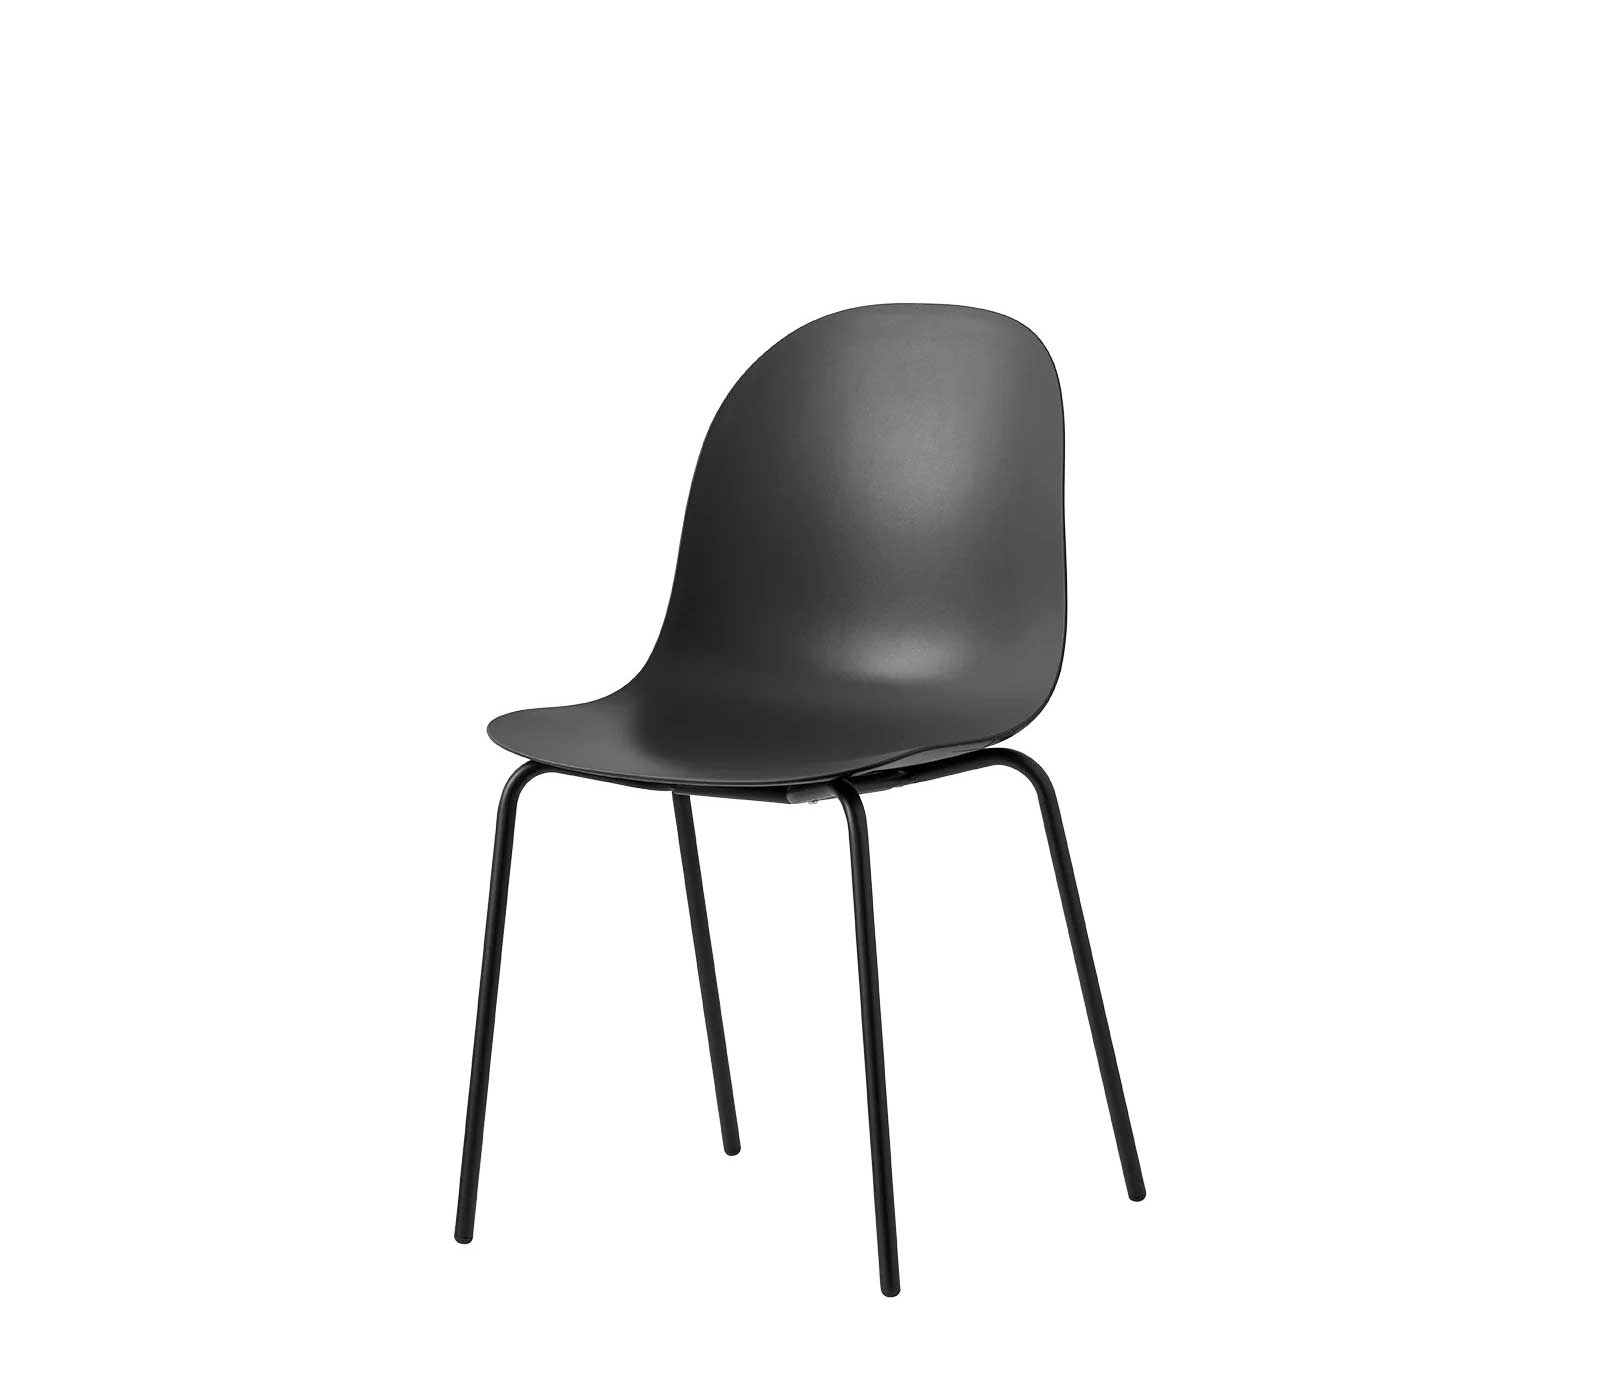 Sedia senza braccioli Connubia Academy con sedile in policarbonato e struttura a 4 gambe in tubo di metallo